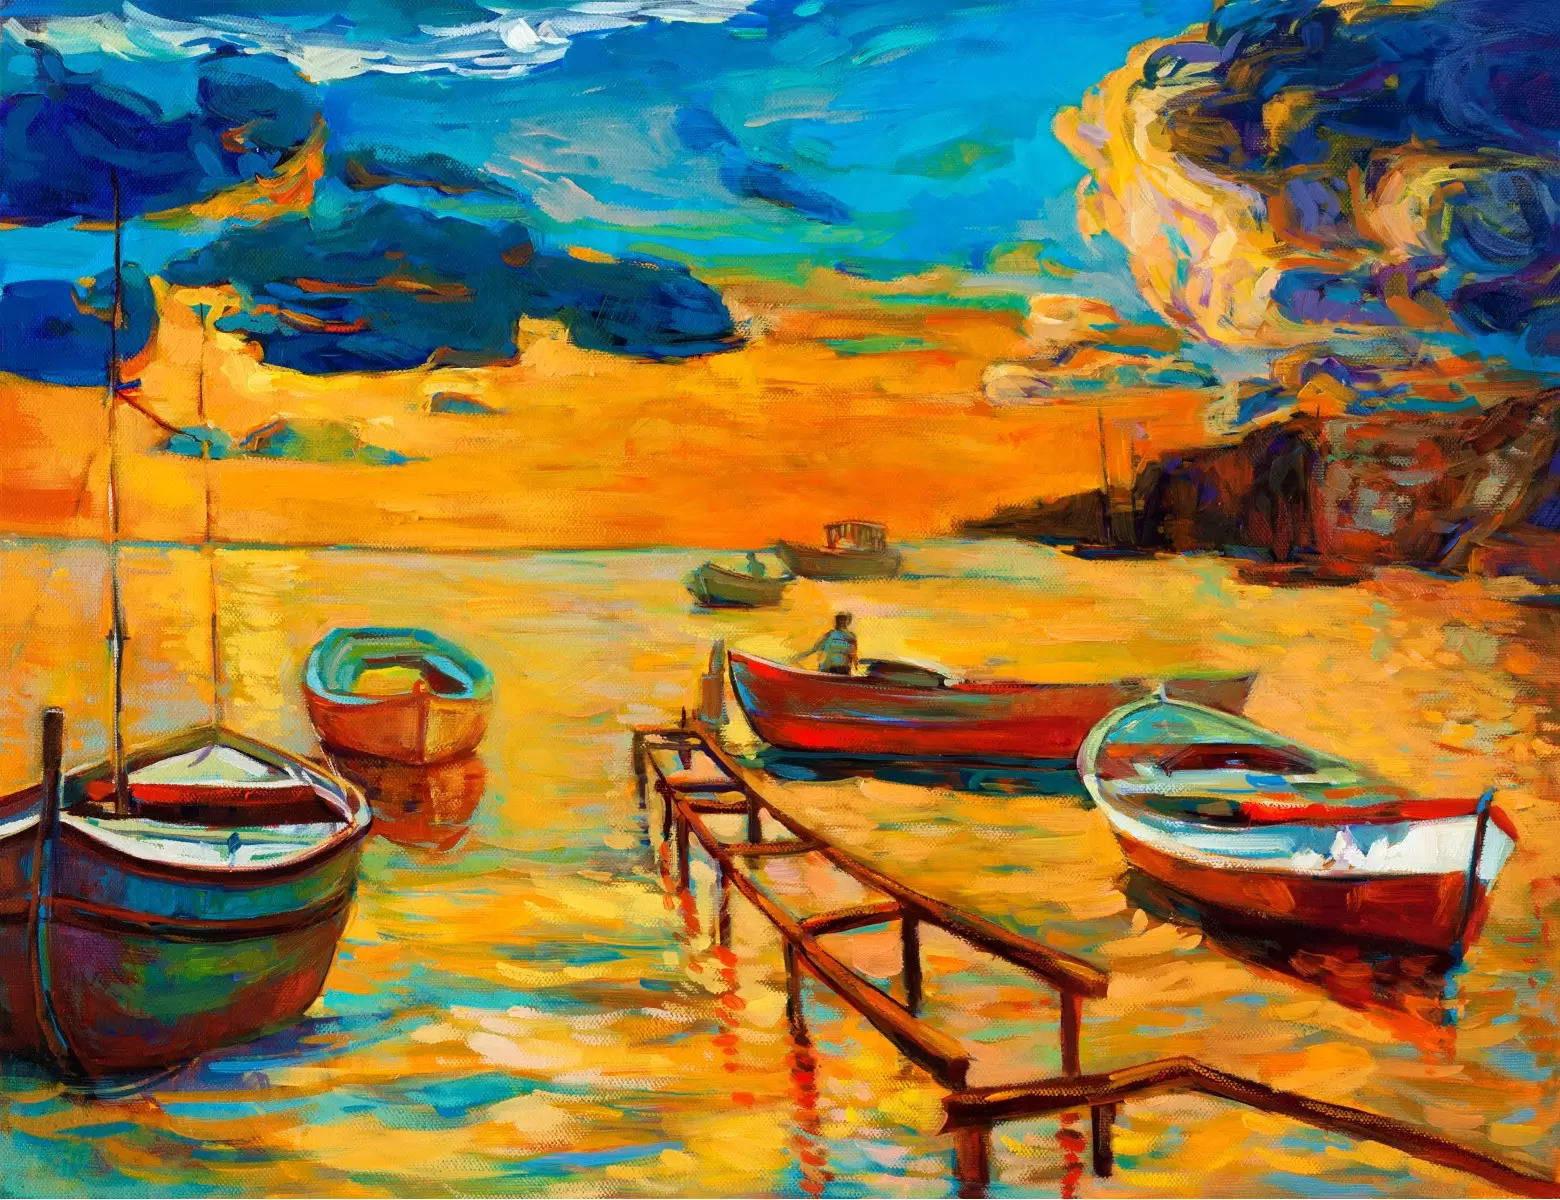 נוף עם סירות 5 - Artpicked - תמונות צבעוניות לסלון ציורי שמן  - מק''ט: 334860